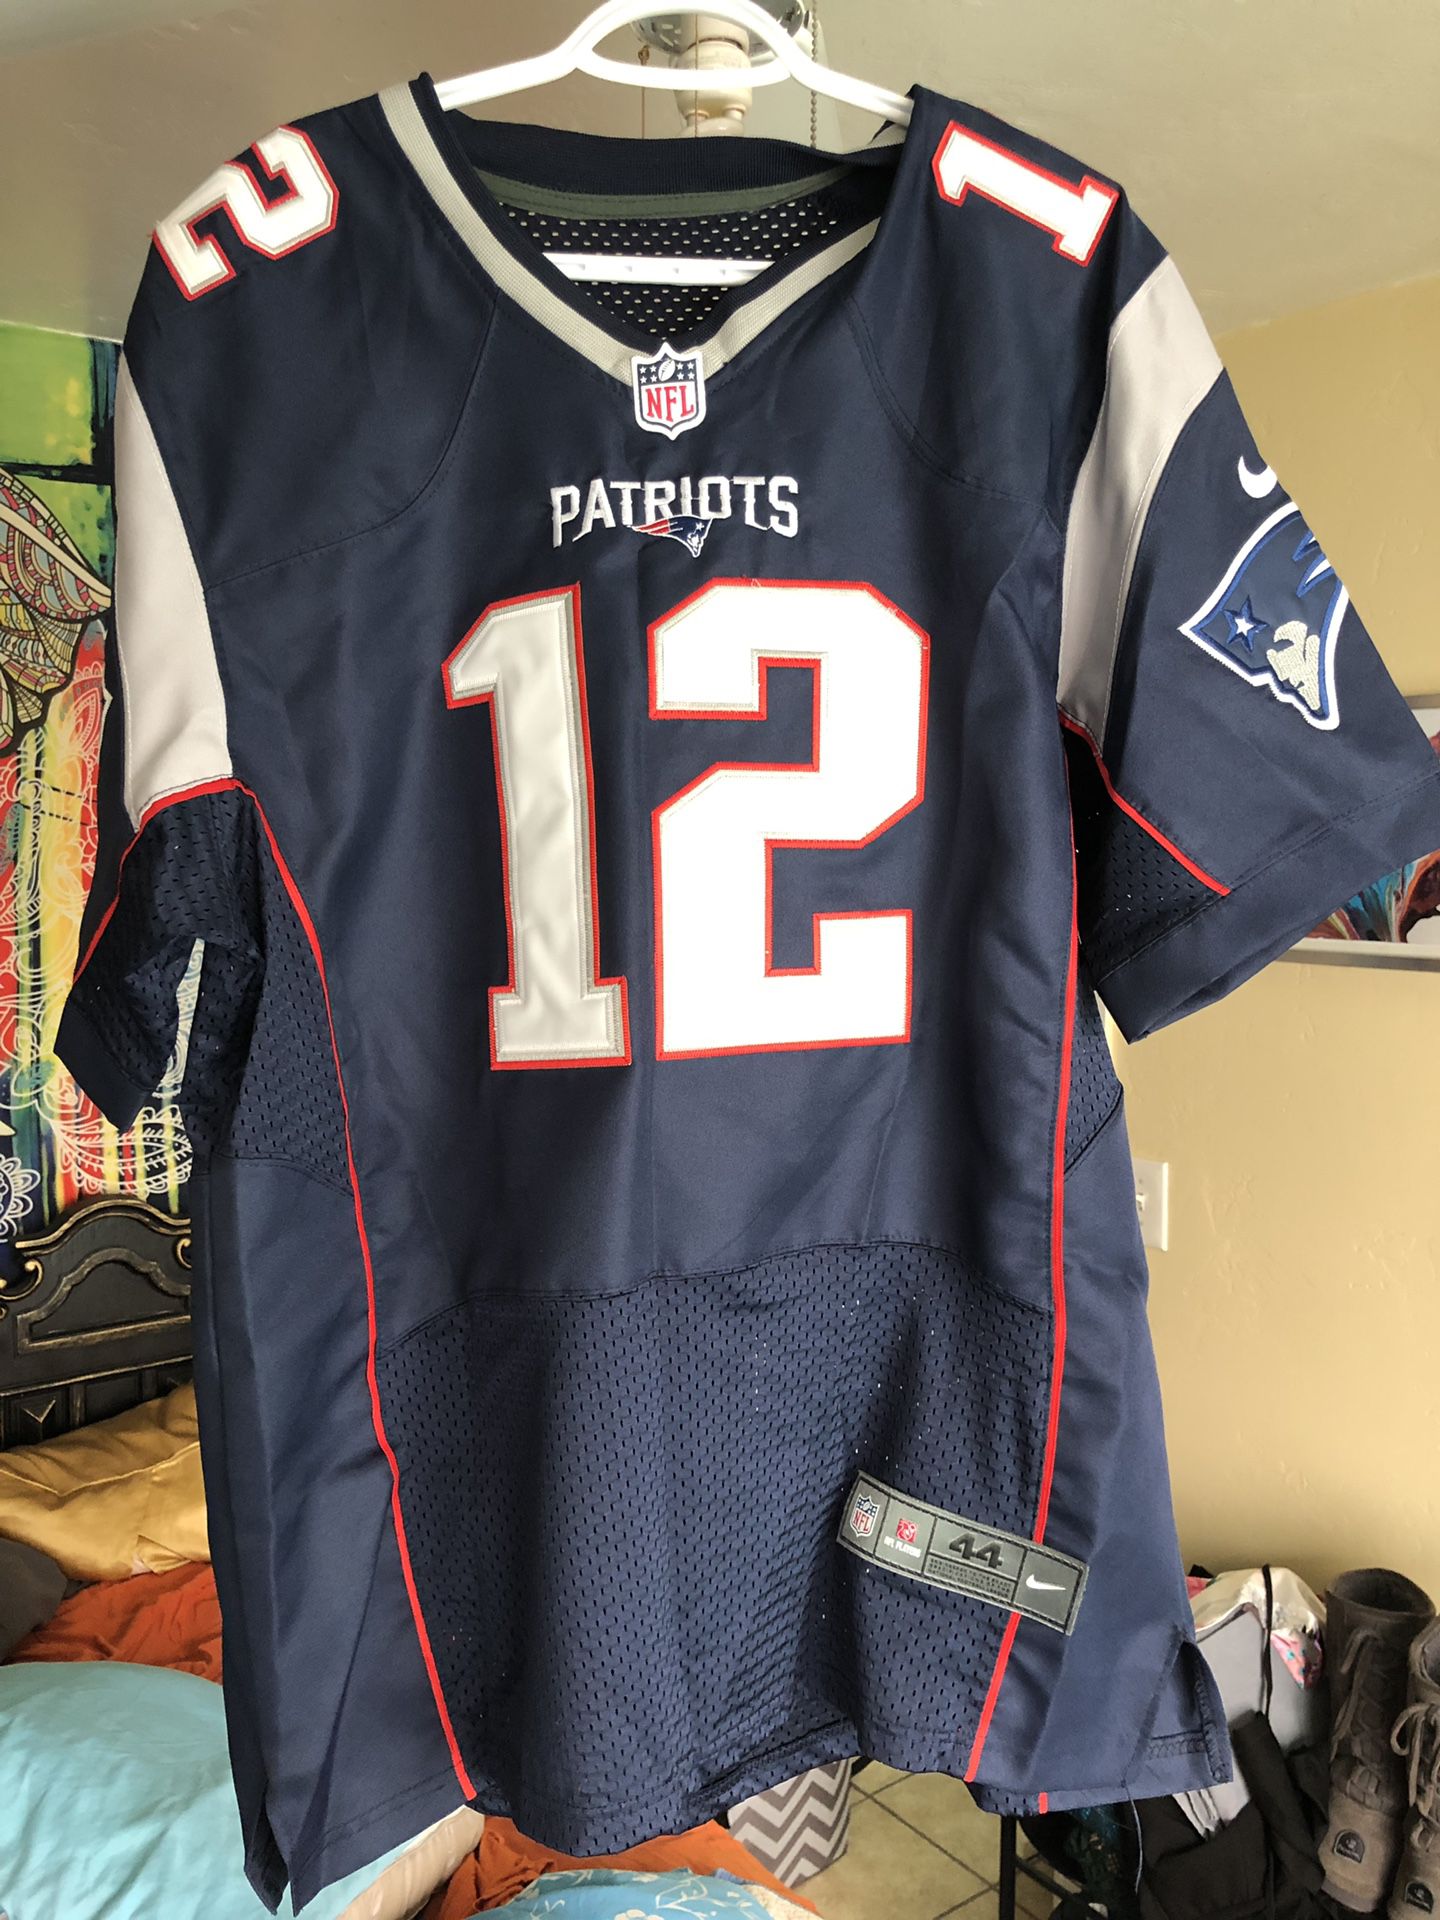 Tom Brady - NFL - Official Patriots Jersey - Size L men’s